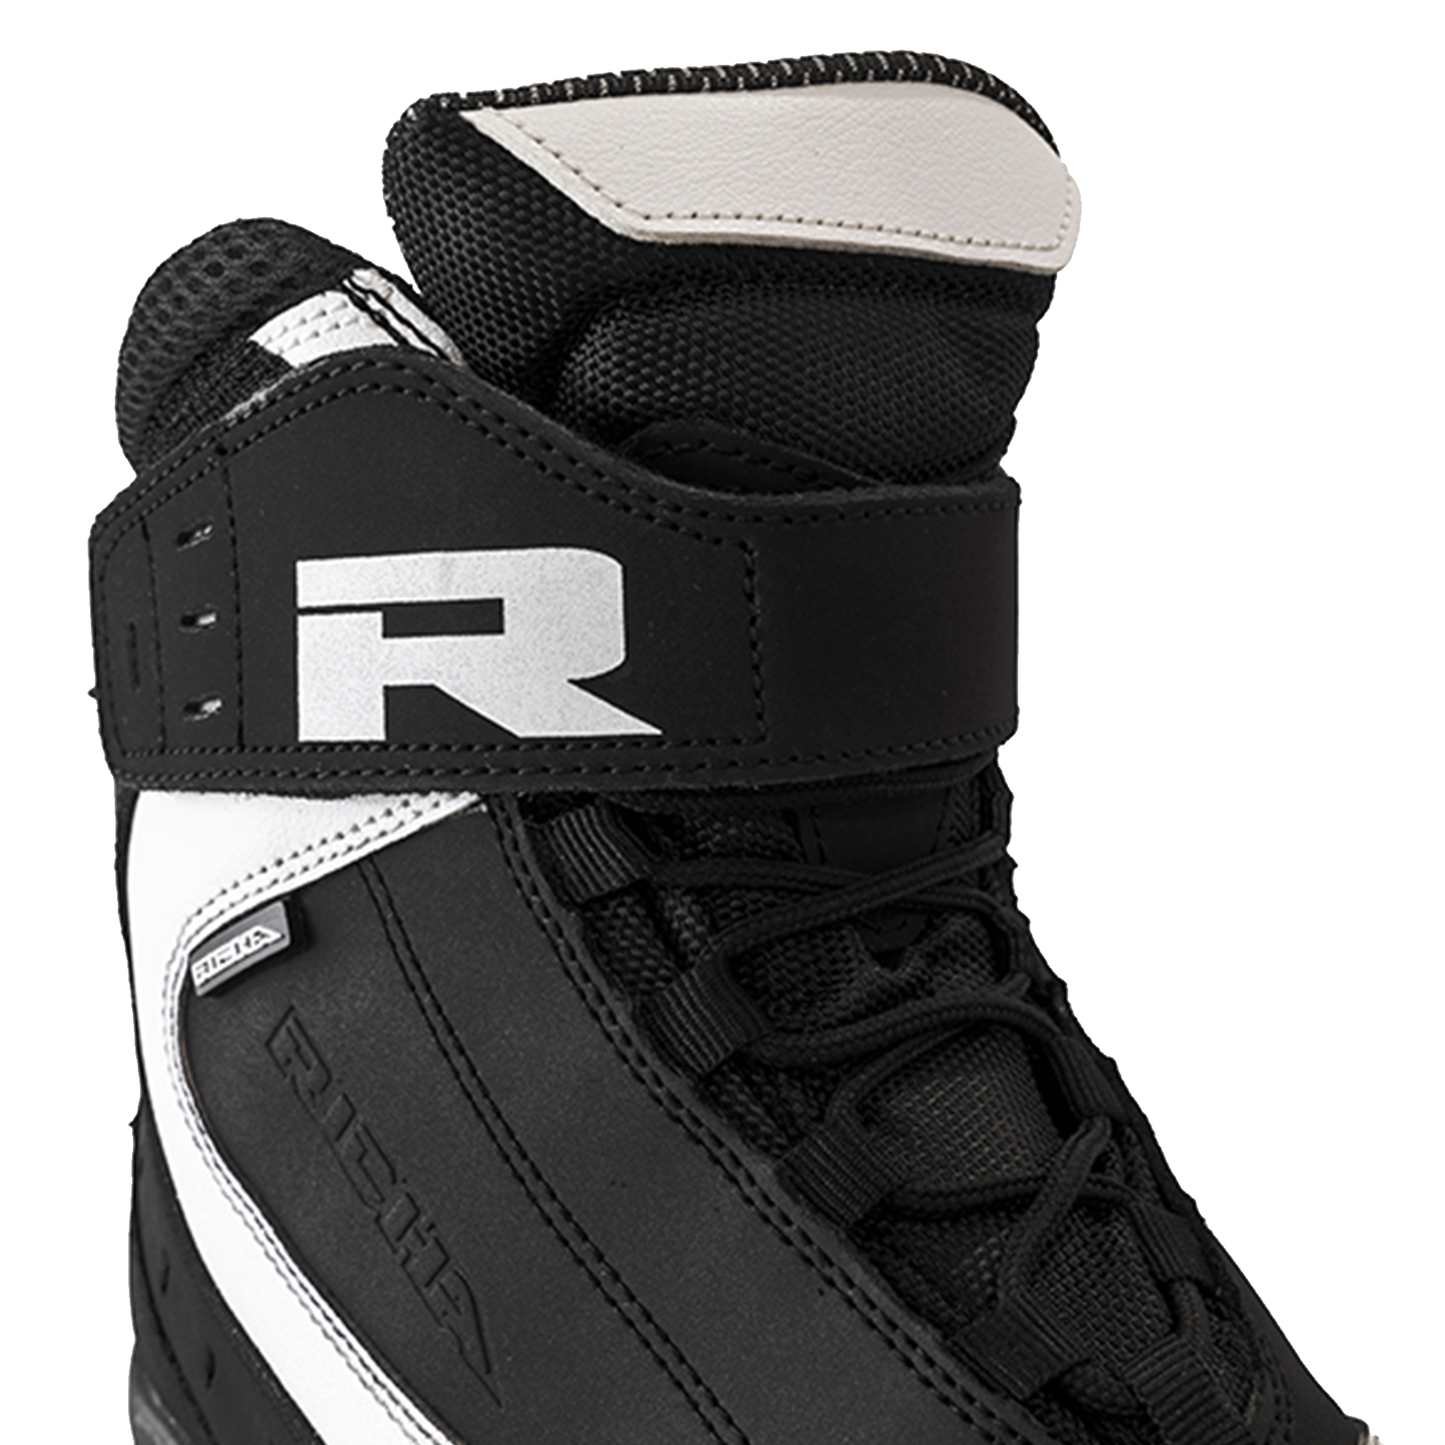 Richa Slick Boots - Black/White